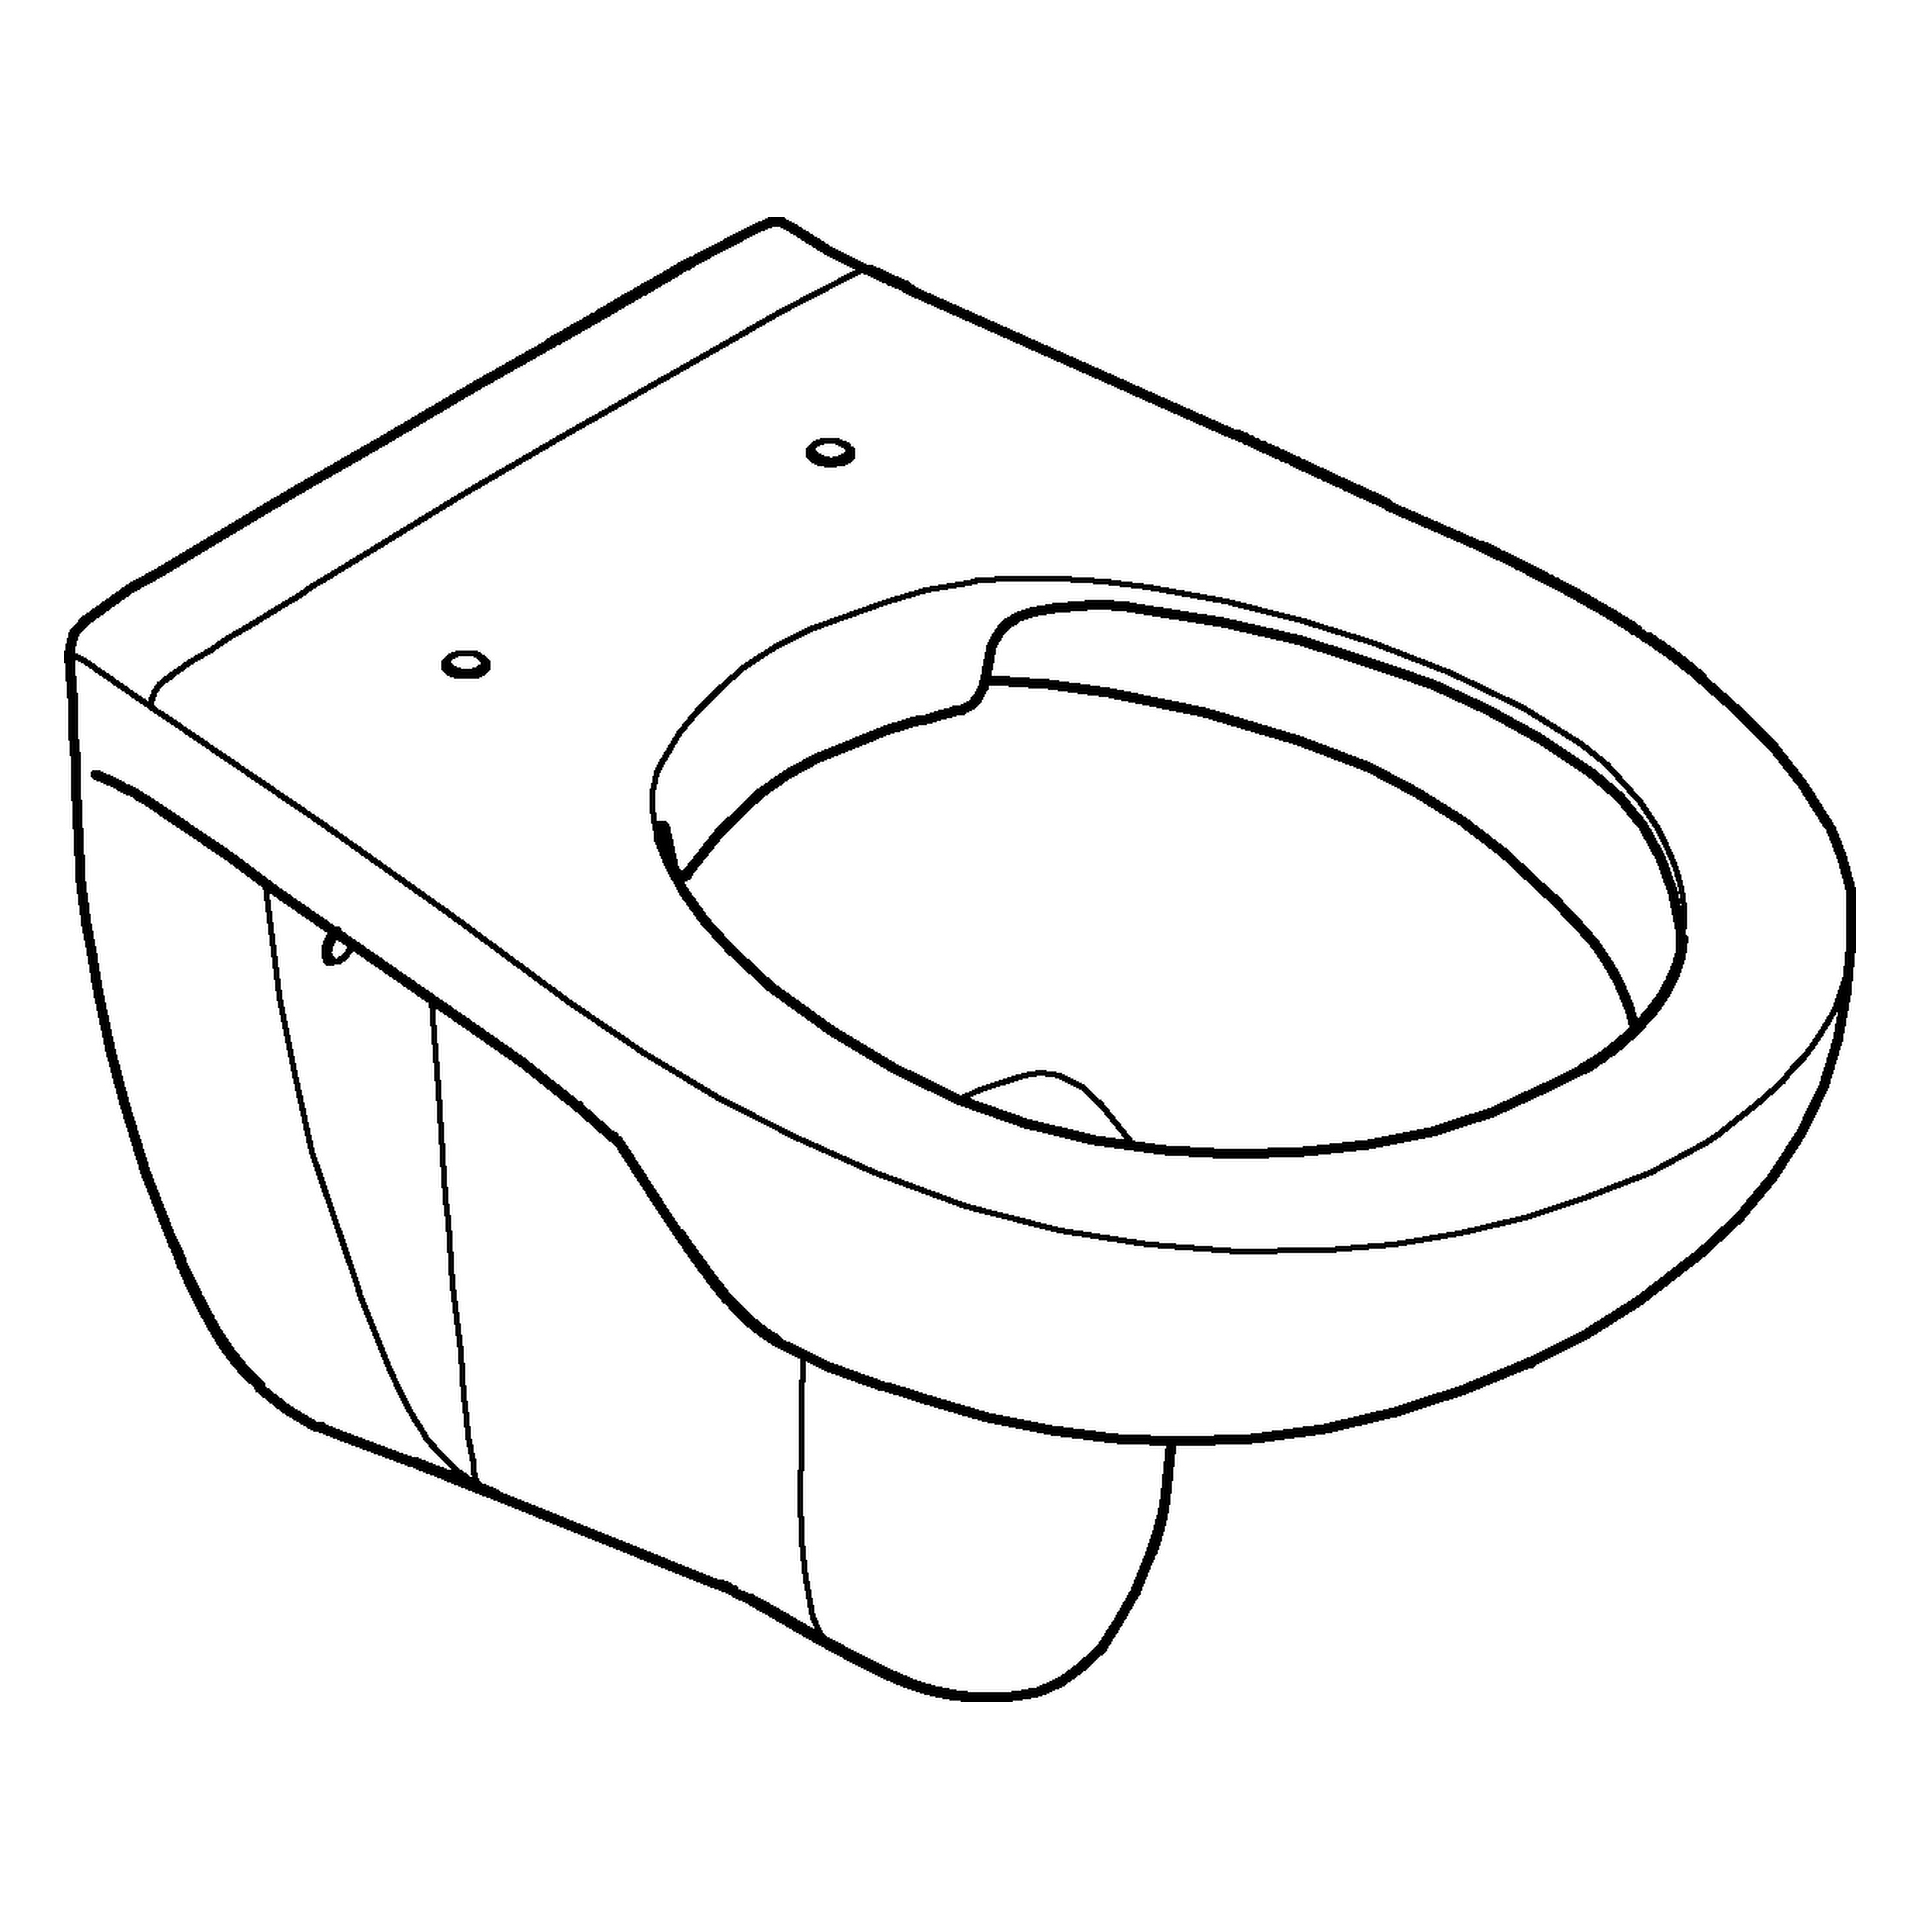 Wand-Tiefspül-WC Bau Keramik 39427, Abgang waagerecht, spülrandlos, für Unterputz-Spülkasten, aus Sanitärkeramik, alpinweiß